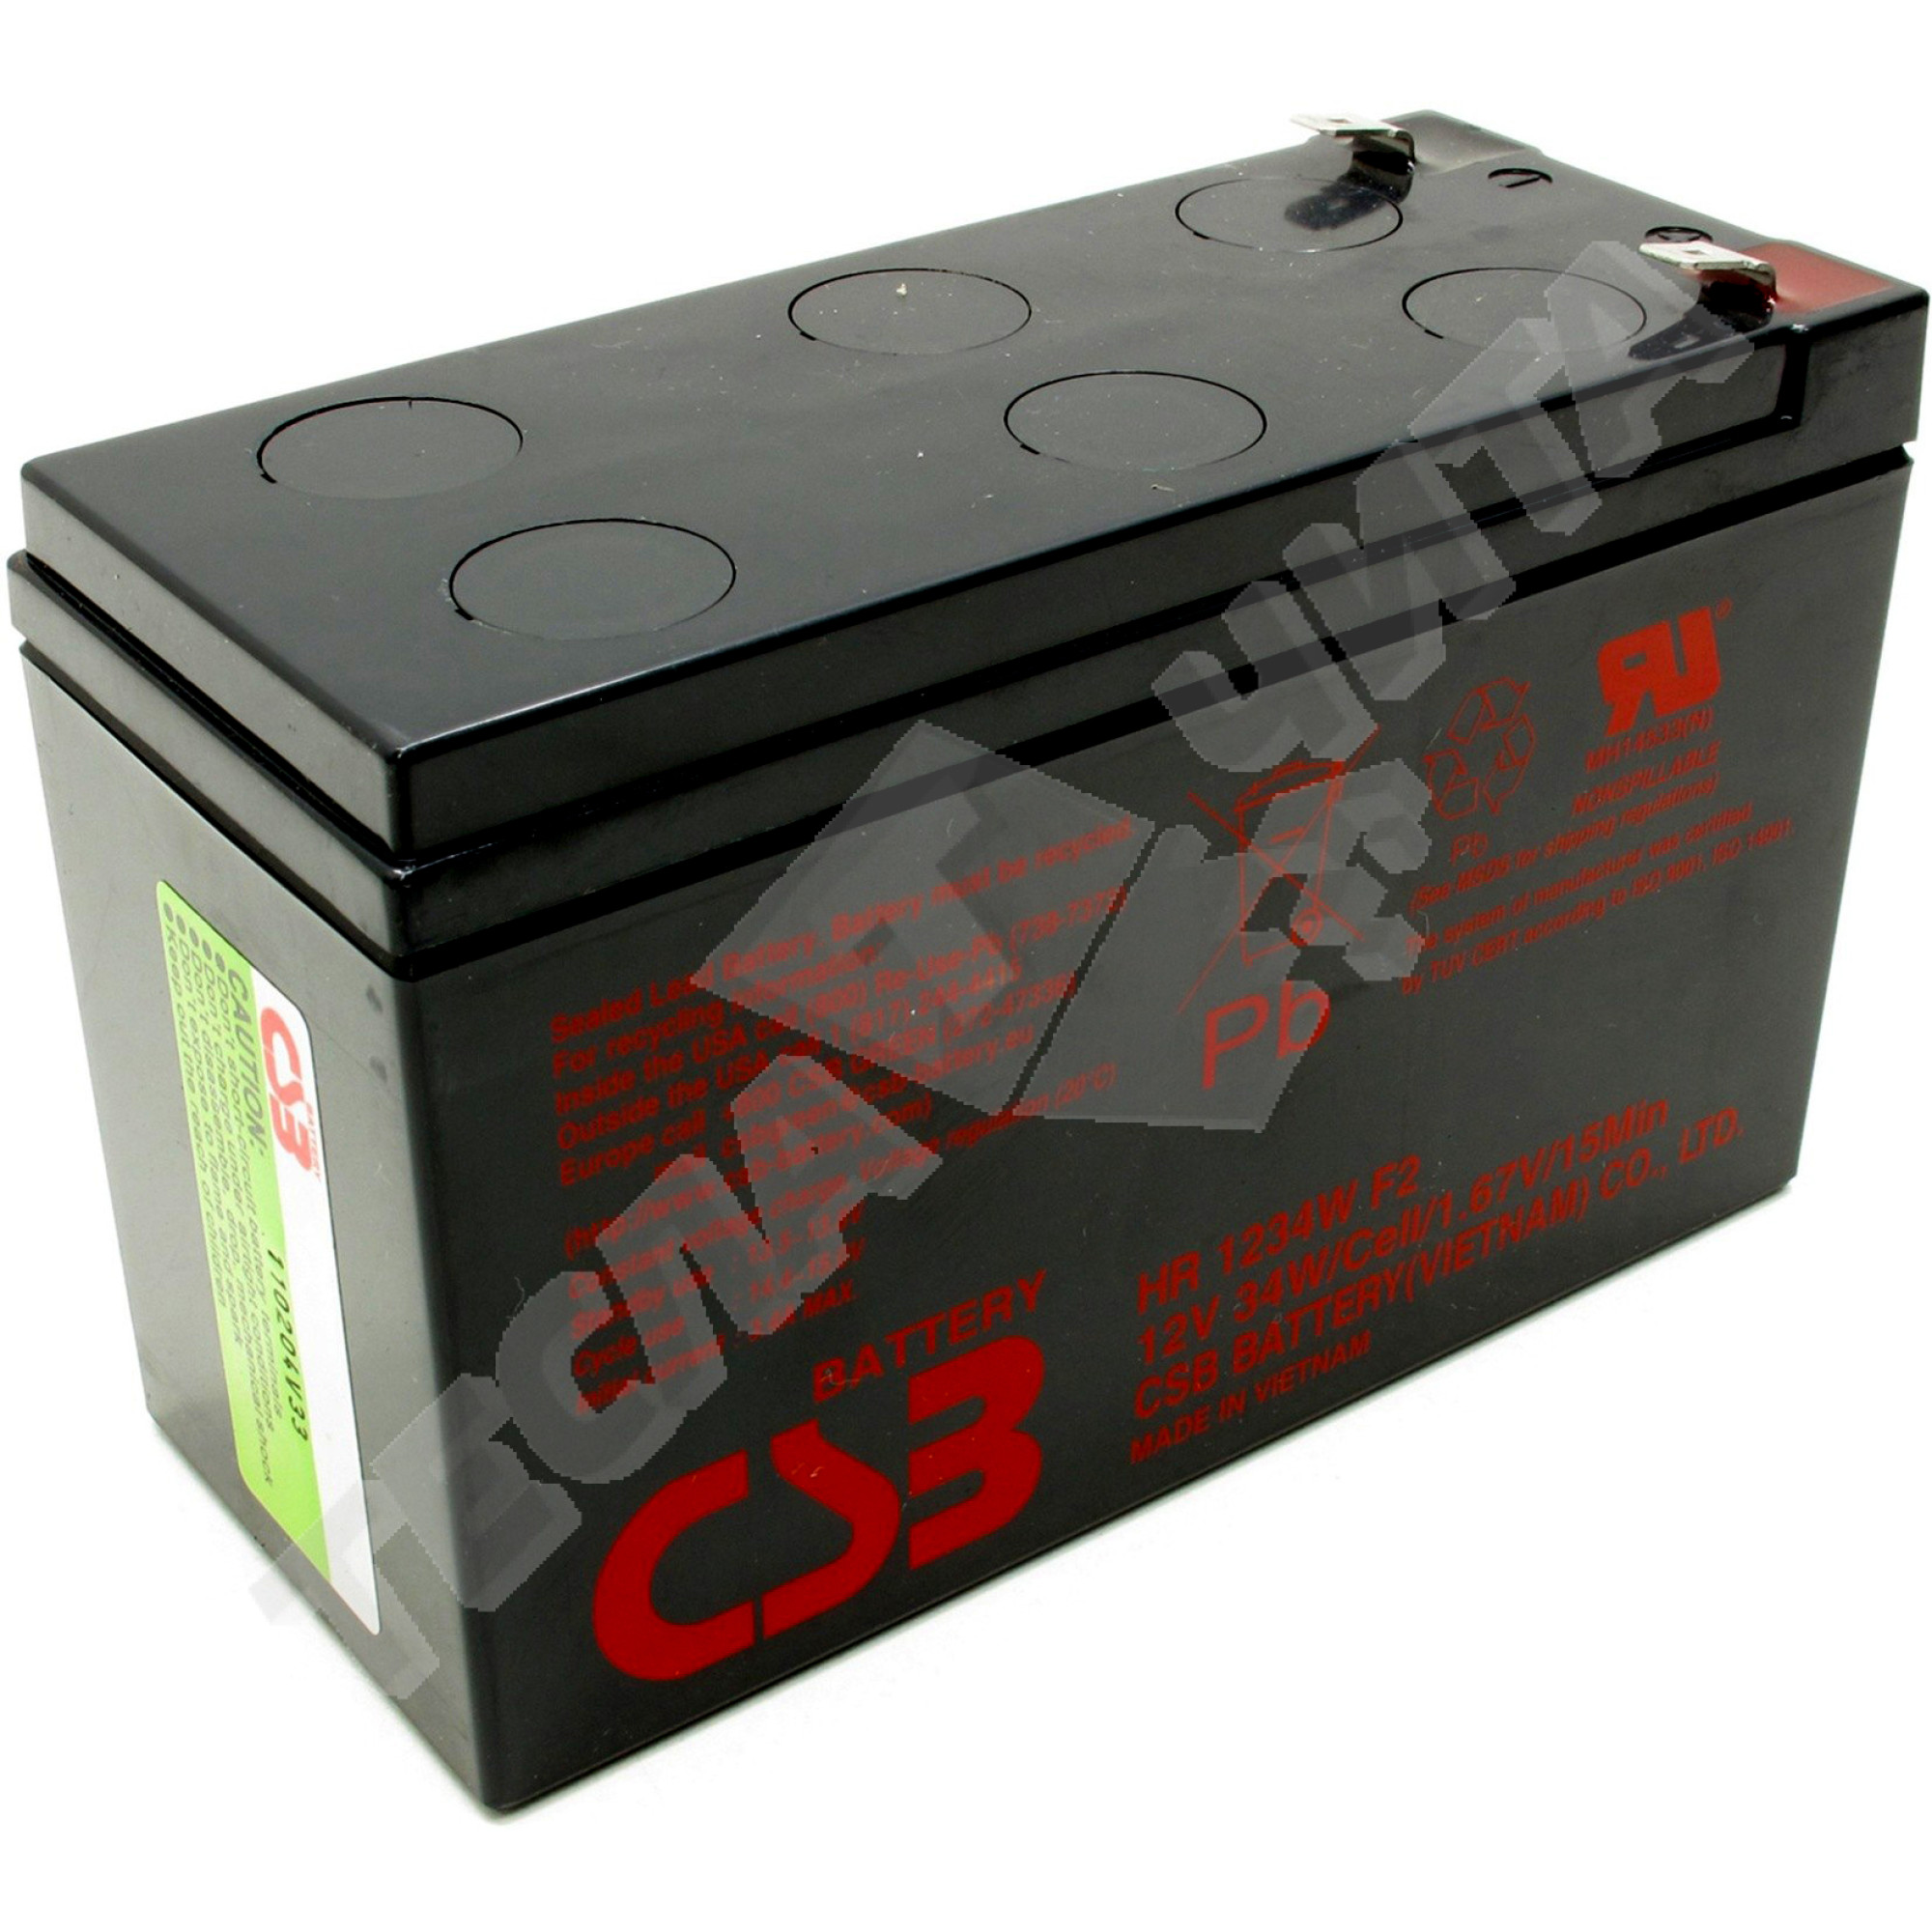 Аккумулятор csb hr1234w. CSB HR 1234w f2. Батарея для ИБП CSB hr1234w f2 12 b/ 9 Aч, шт.. Аккумуляторная батарея HR 1234 W f2 34w/Cell/1.67v/15 min или его аналог. 12в/9 а*ч, CSB Battery hr1234w f2 или аналог.